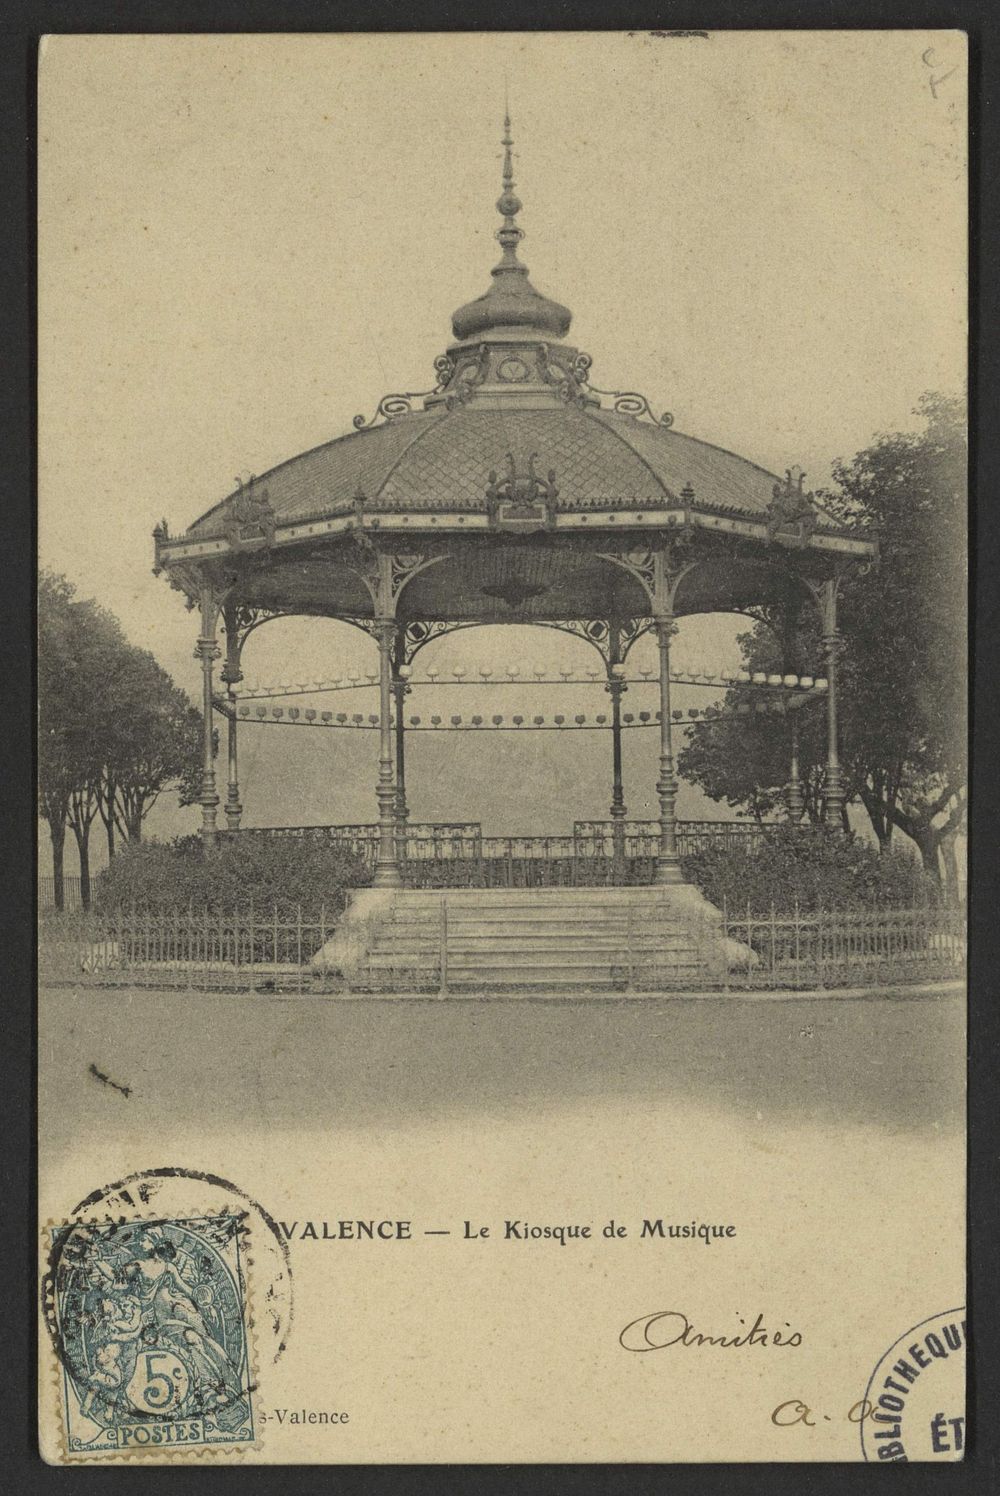 Valence - Le Kiosque de Musique